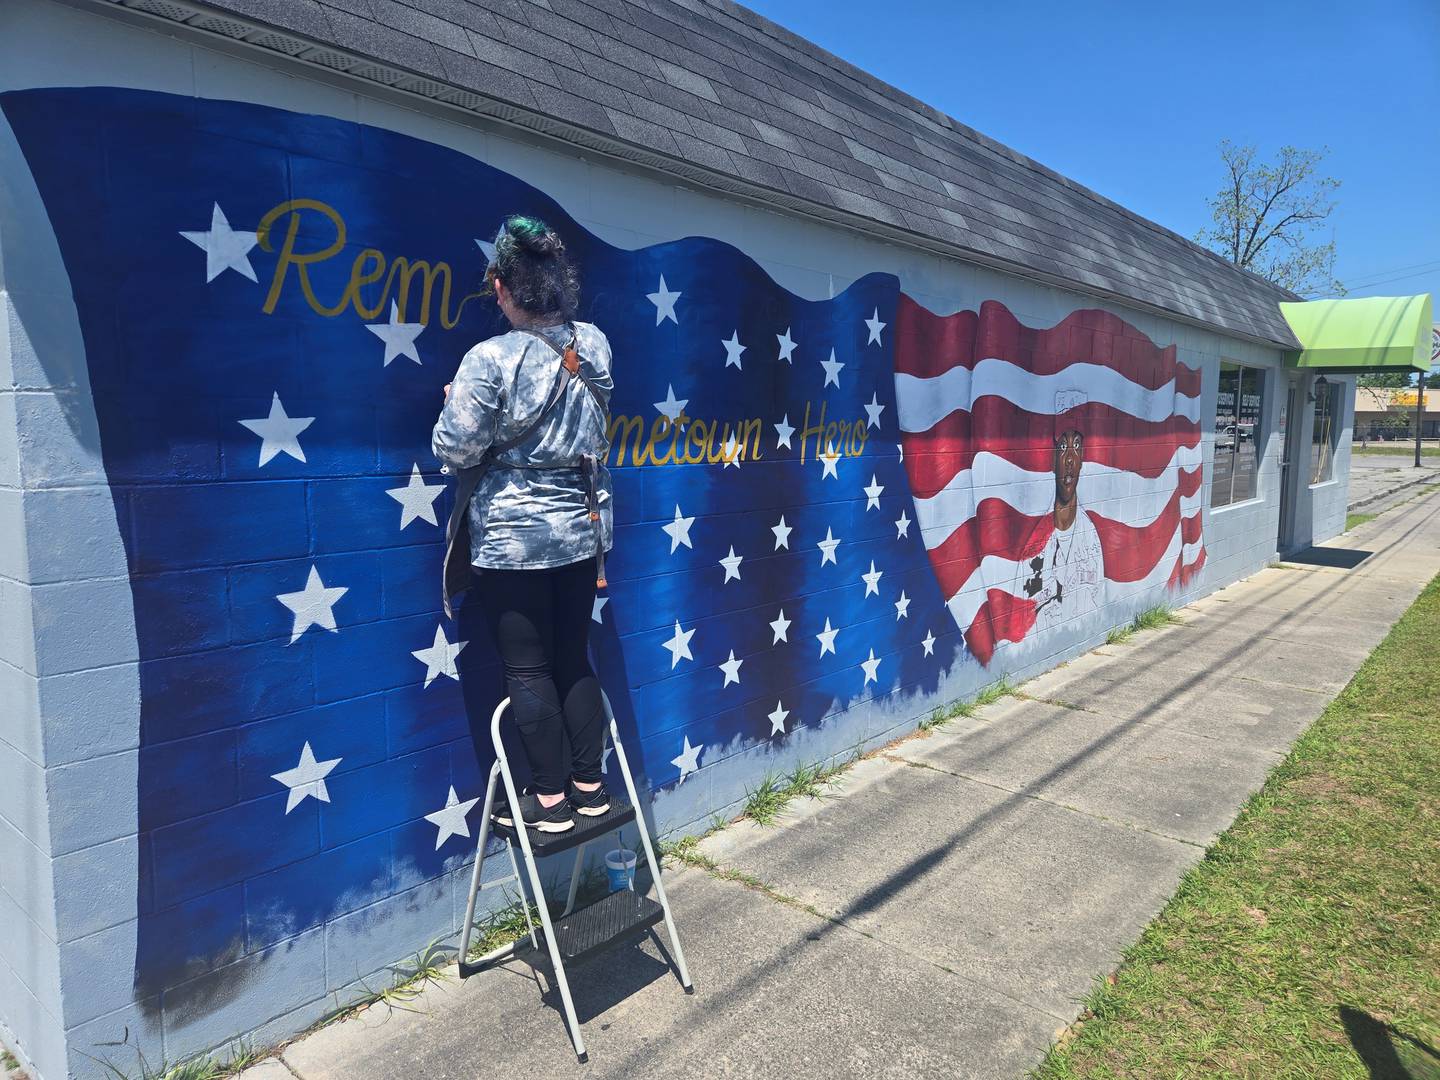 Sgt. Kennedy Sanders mural